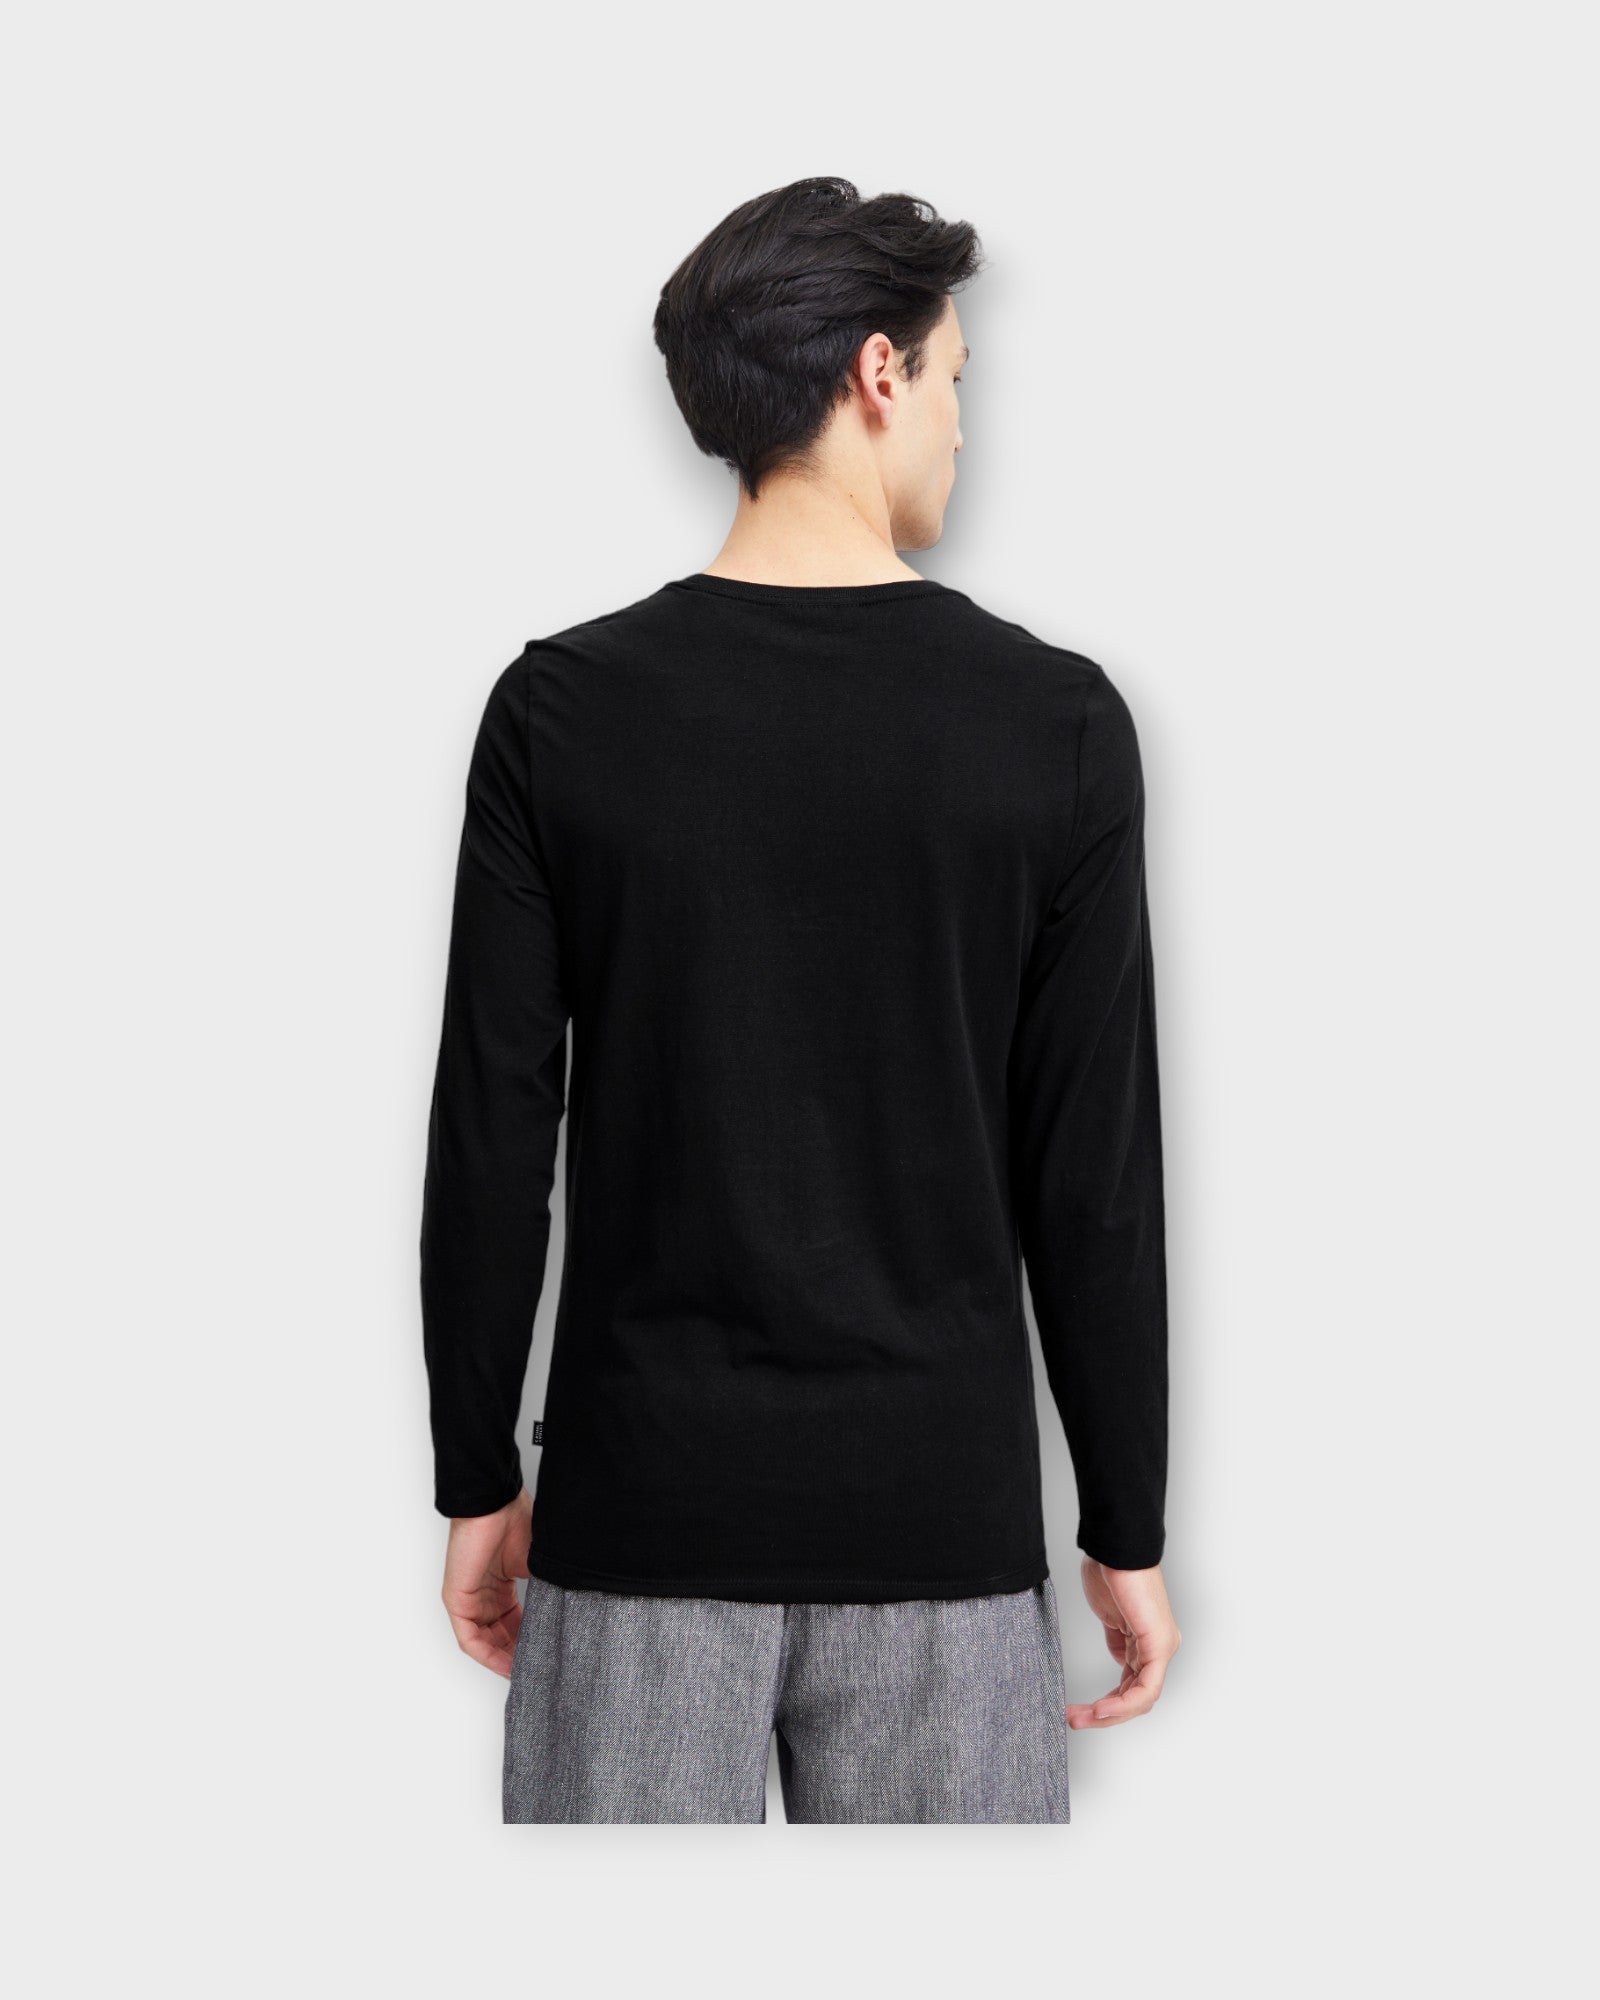 Theo LS T-shirt Black, langærmet sort  t-shirt fra Casual Friday. Her set på model bagfra.